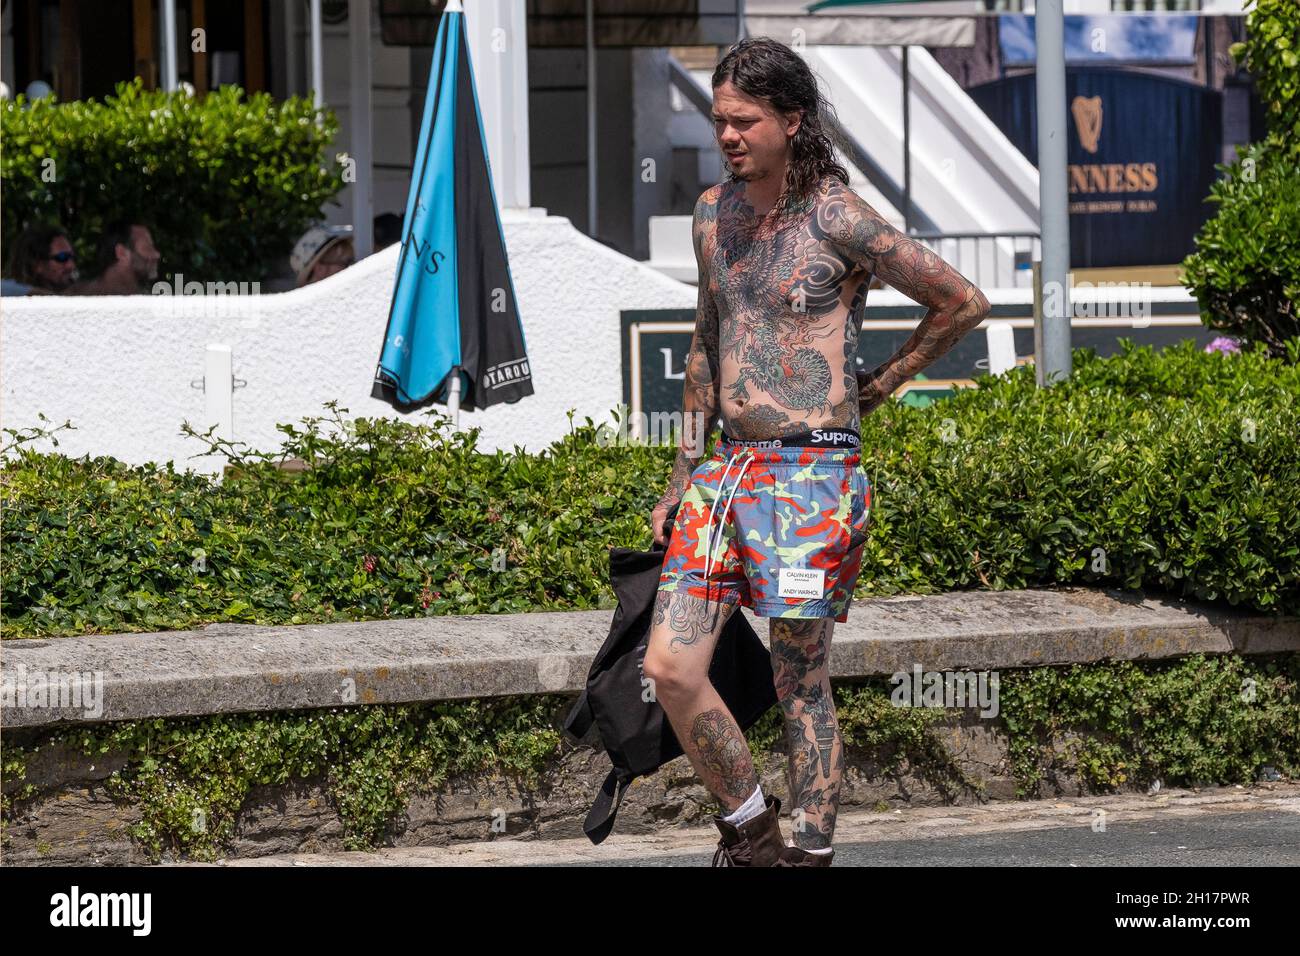 Un jeune homme fortement tatoué avec des tatouages de style japonais Irezumi marchant dans un centre-ville ensoleillé de Newquay en Cornouailles. Banque D'Images